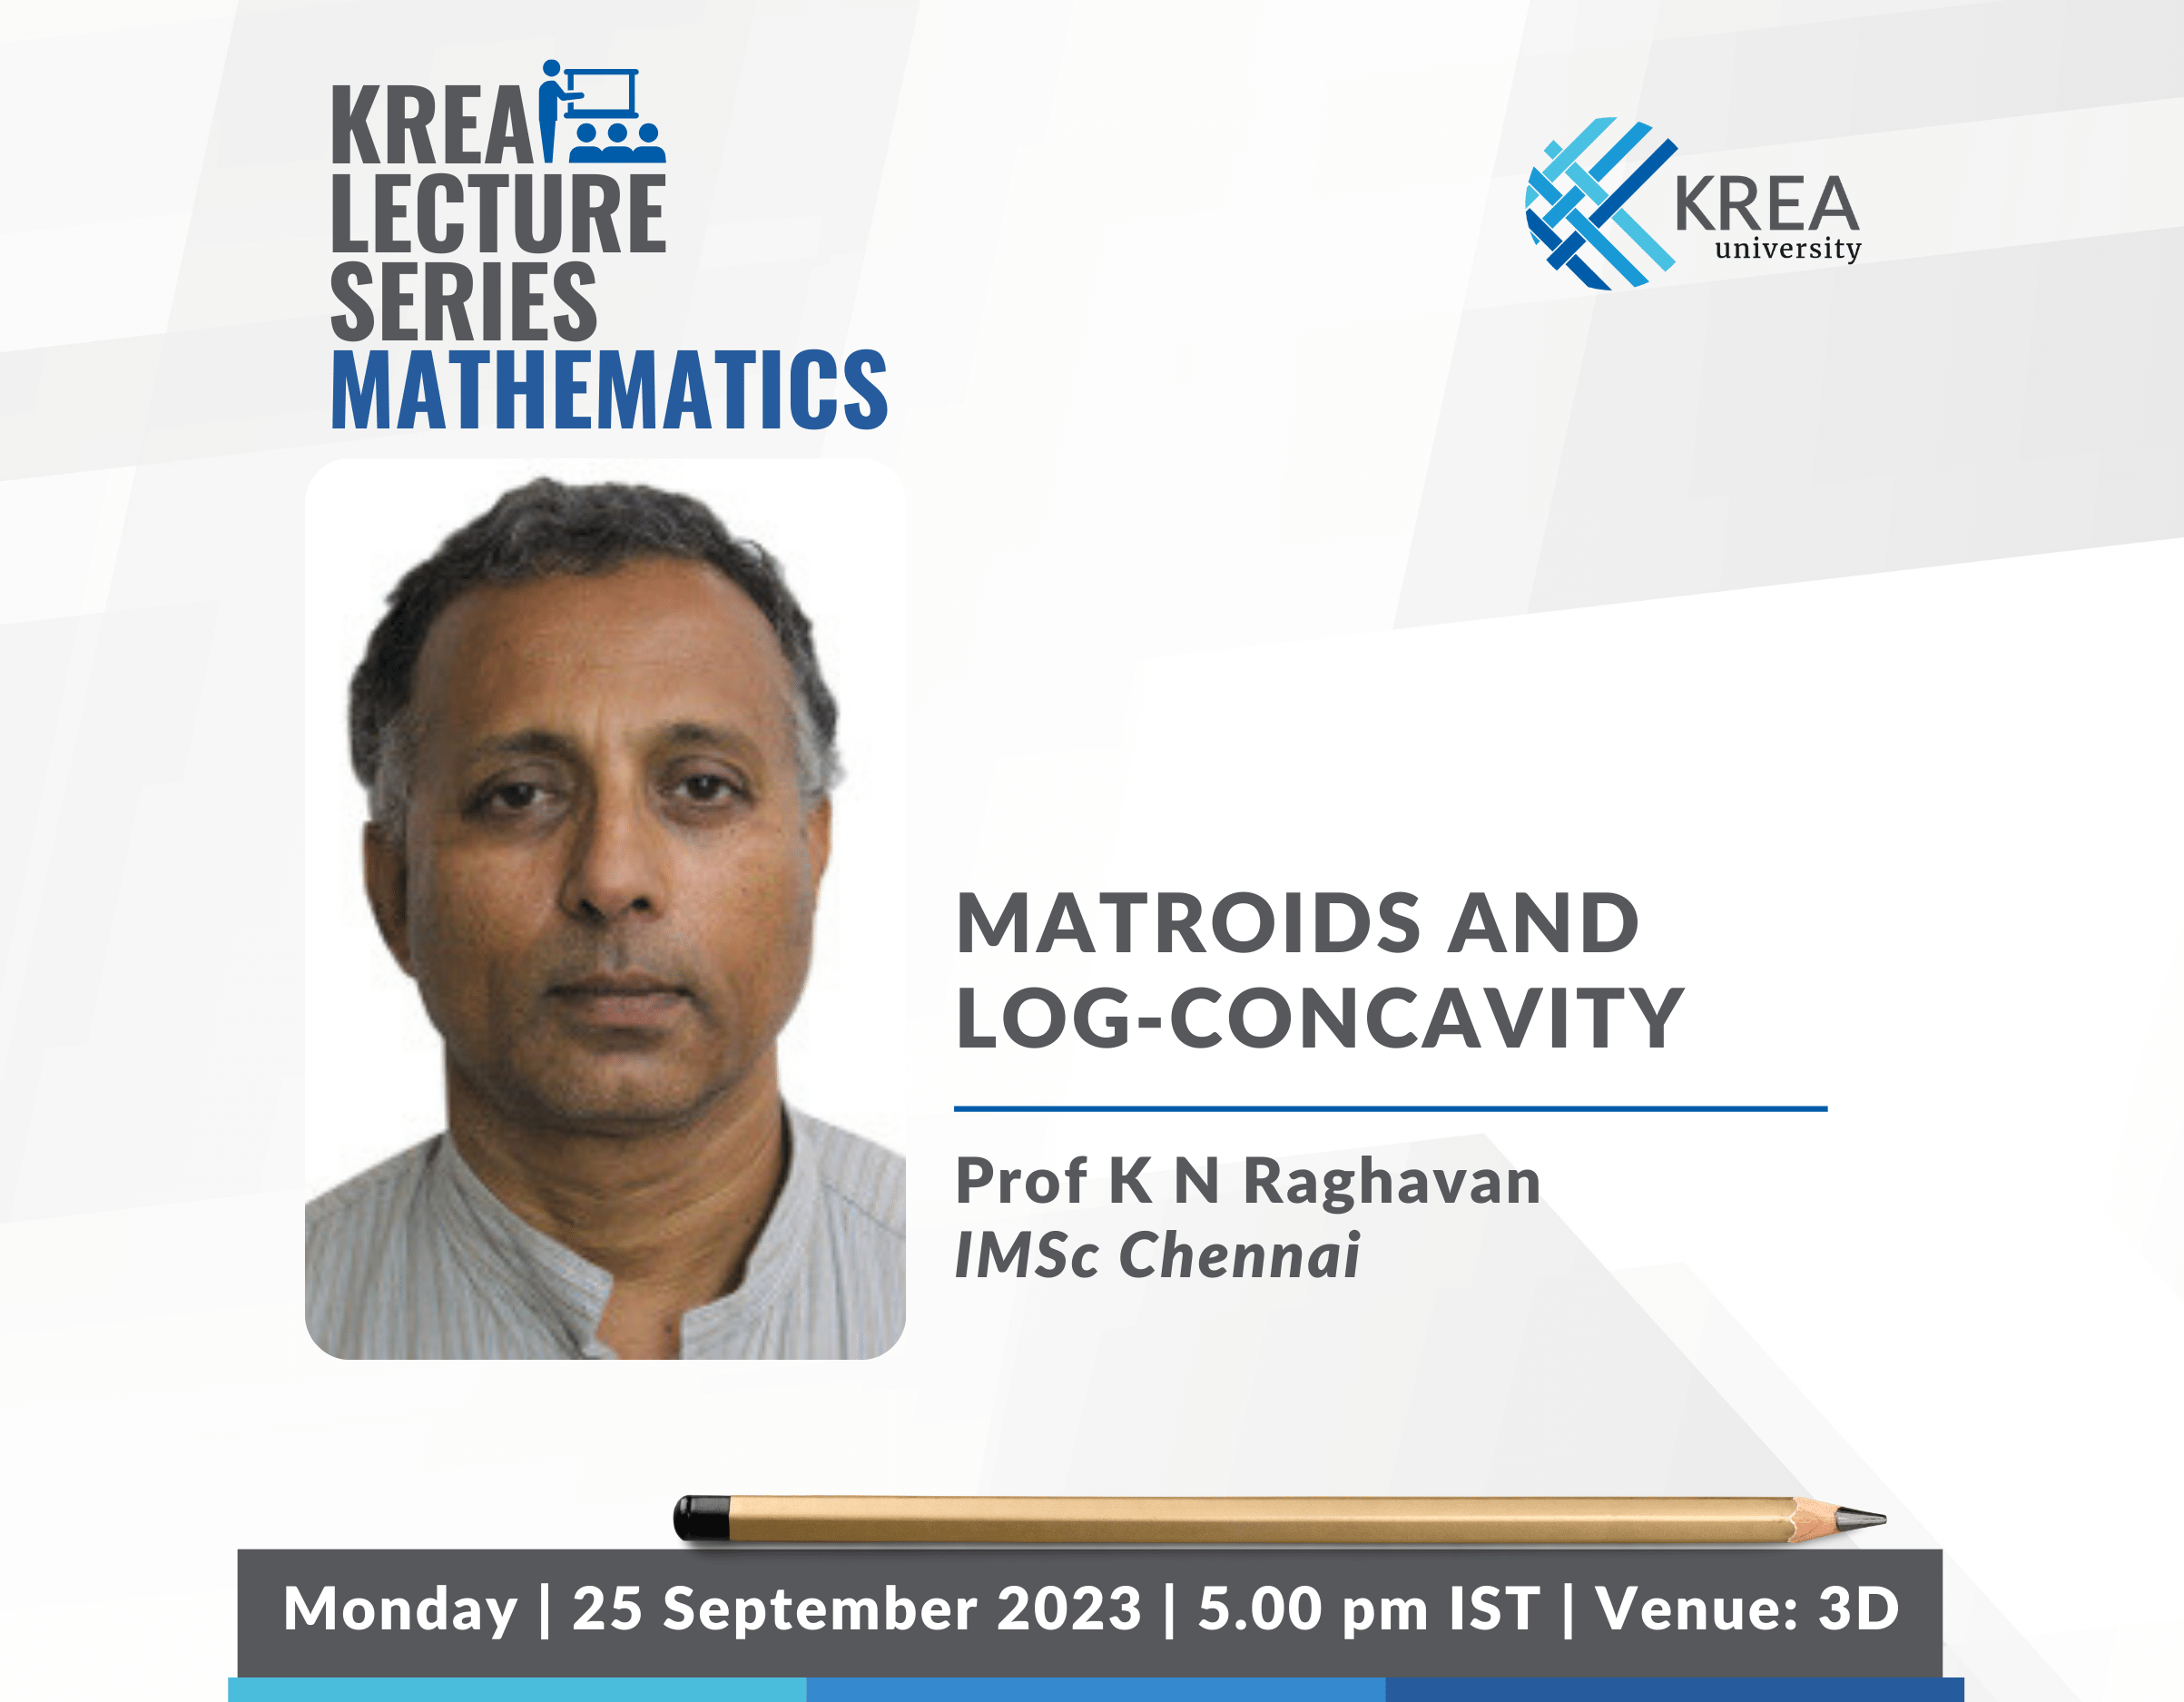 Mathematics Colloquium: Matroids and Log-concavity by Prof K N Raghavan, IMSc Chennai